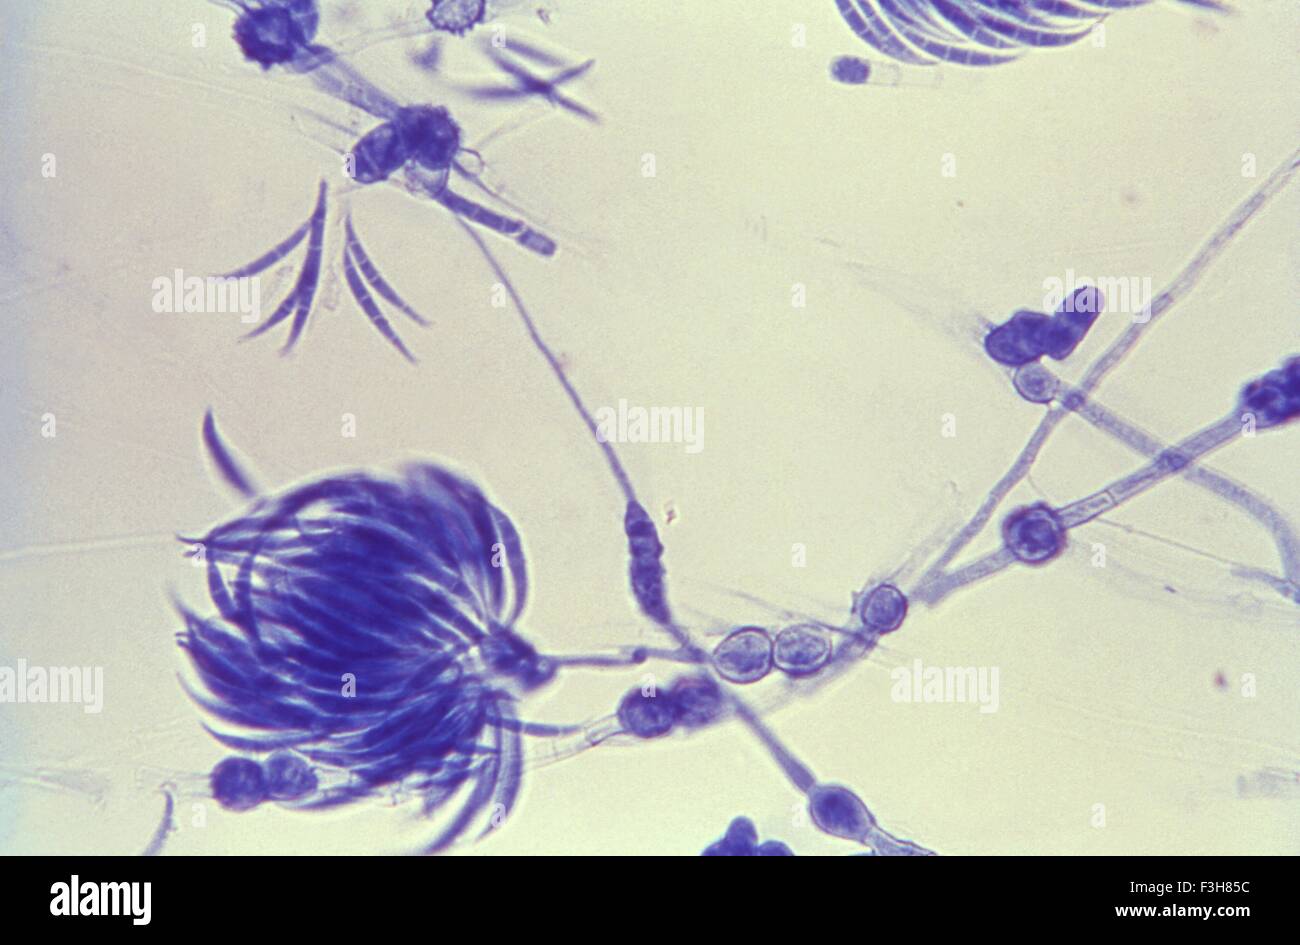 Lactophenol blu di cotone macchiato di Fusarium organismo fungine Foto Stock